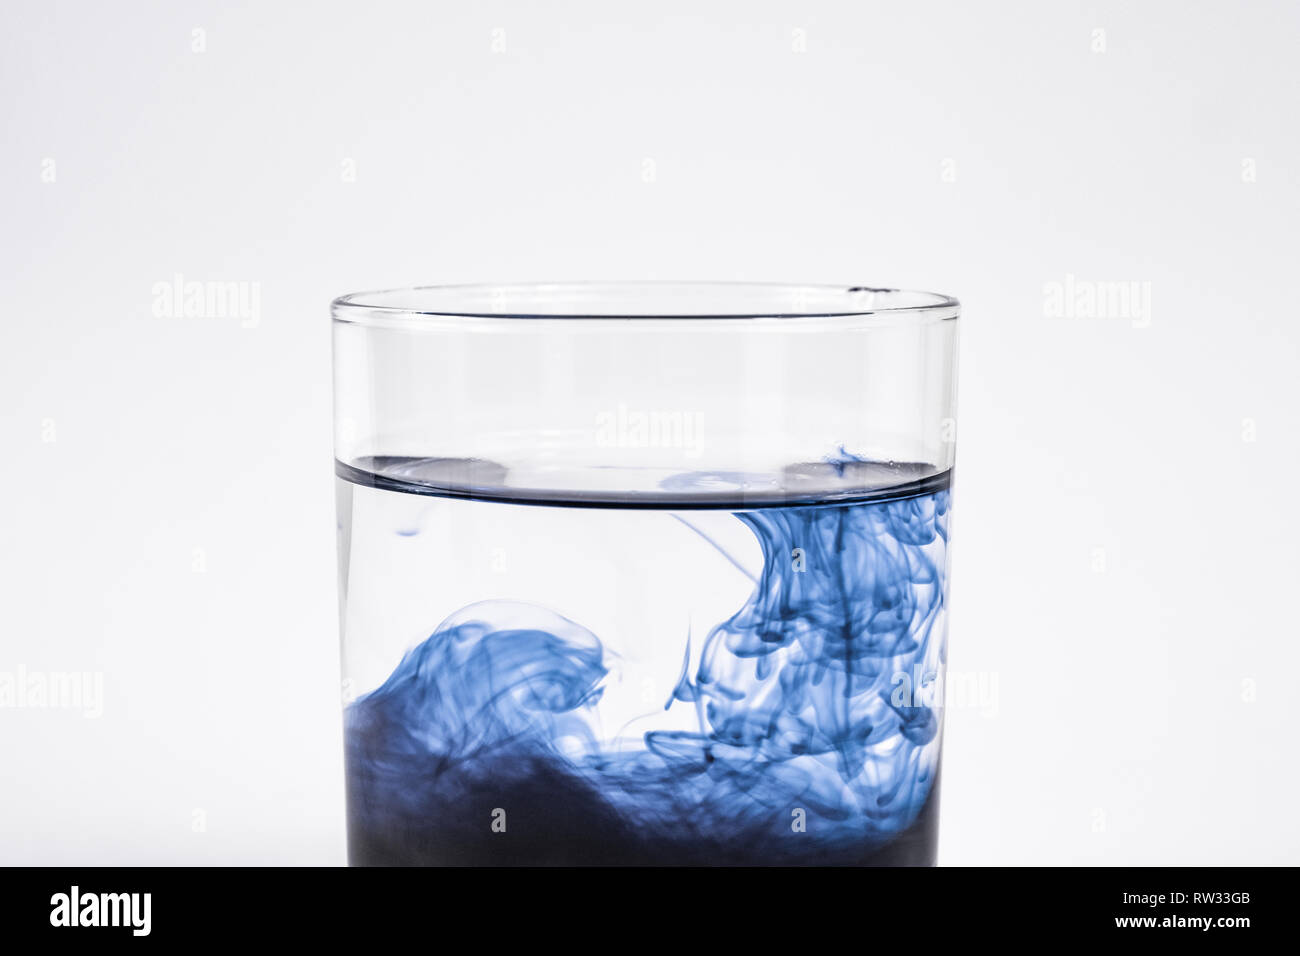 La contamination de l'eau concept. Substance foncée dissoudre avec de l'eau propre dans un verre à fond blanc, close-up view Banque D'Images